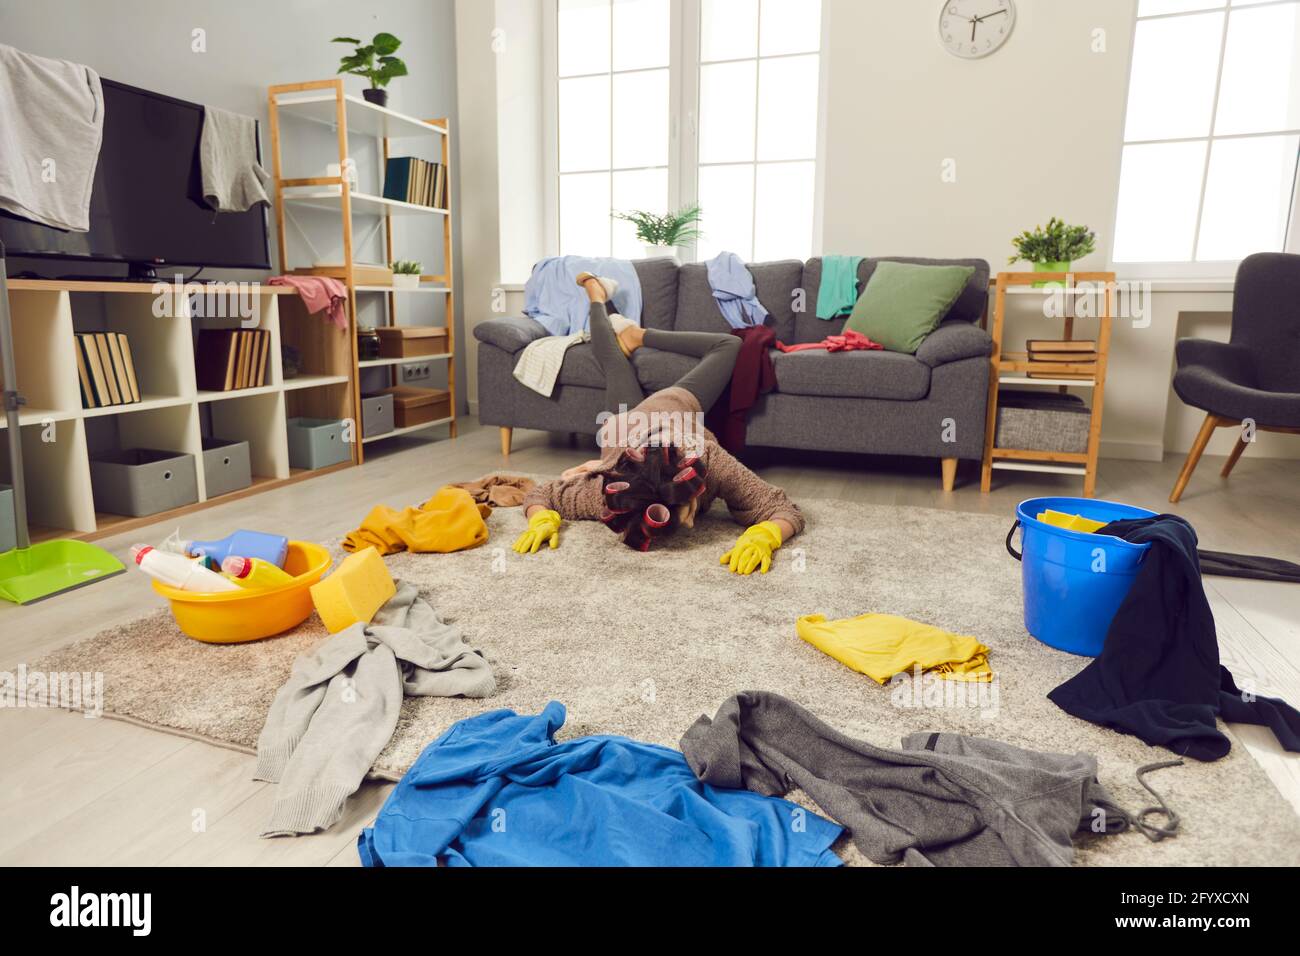 Sfinito giovane donna caduto sul pavimento durante la pulizia il suo soggiorno disordinato Foto Stock